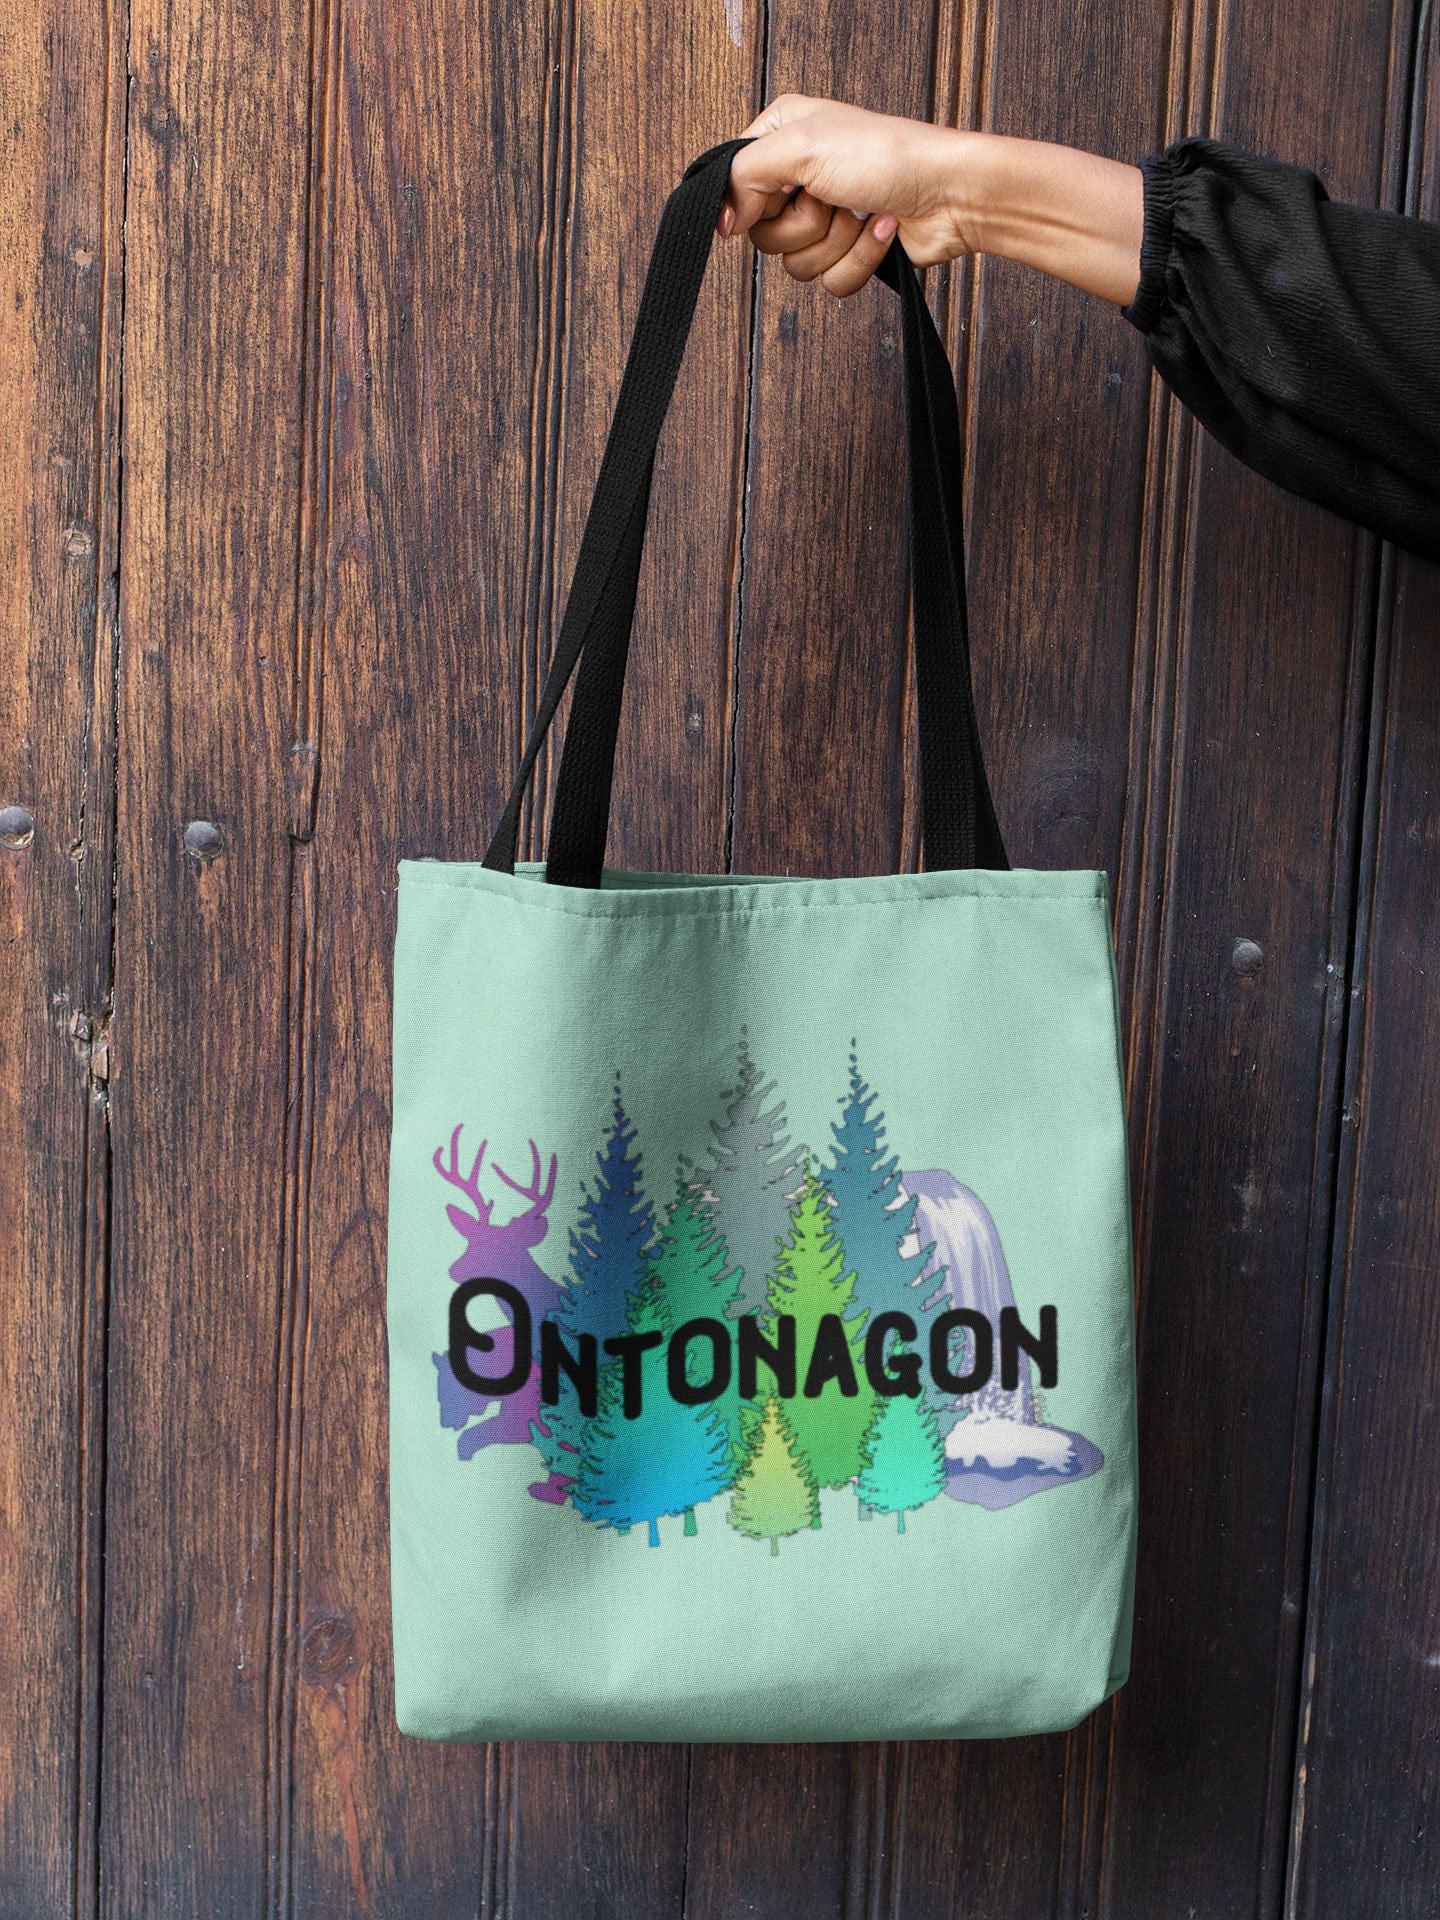 Ontonagon Tote Bag | Upper Michigan Gift | Yooper Tote/Grocery Bag